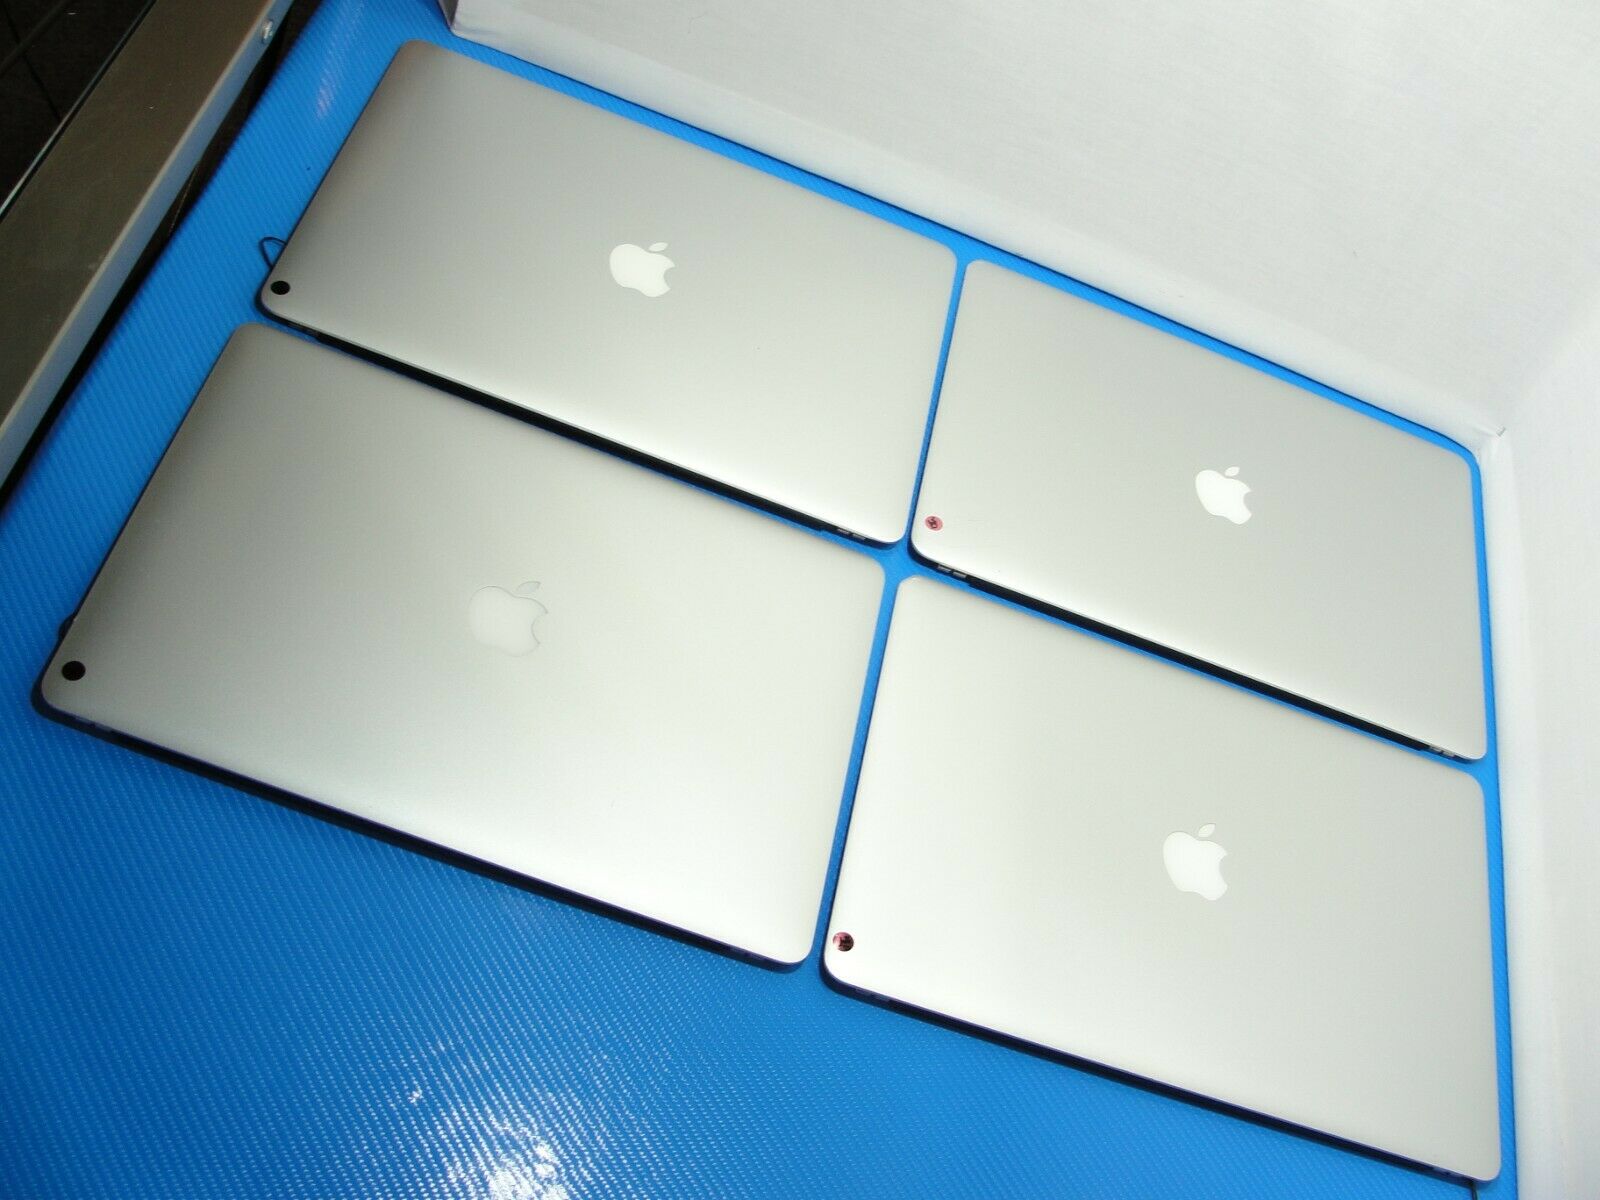 Apple MacBook Pro A1398 15.4